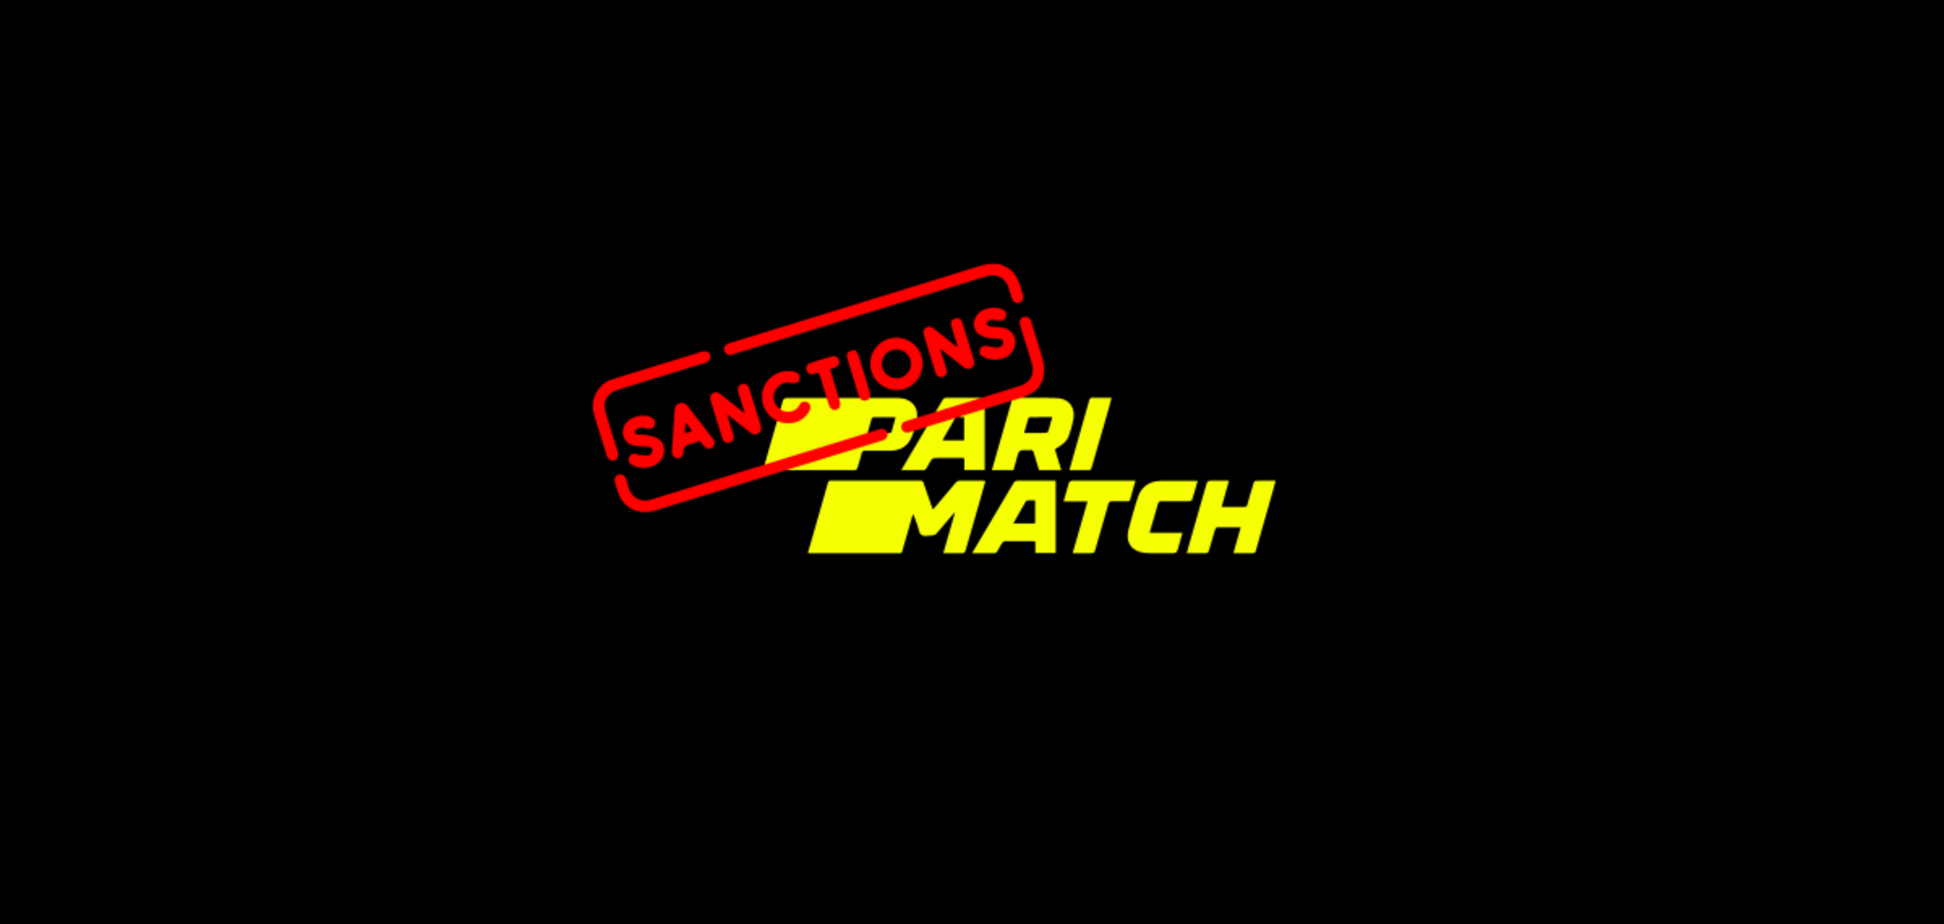 Официальных причин санкций против Parimatch до сих пор нет, – представитель компании